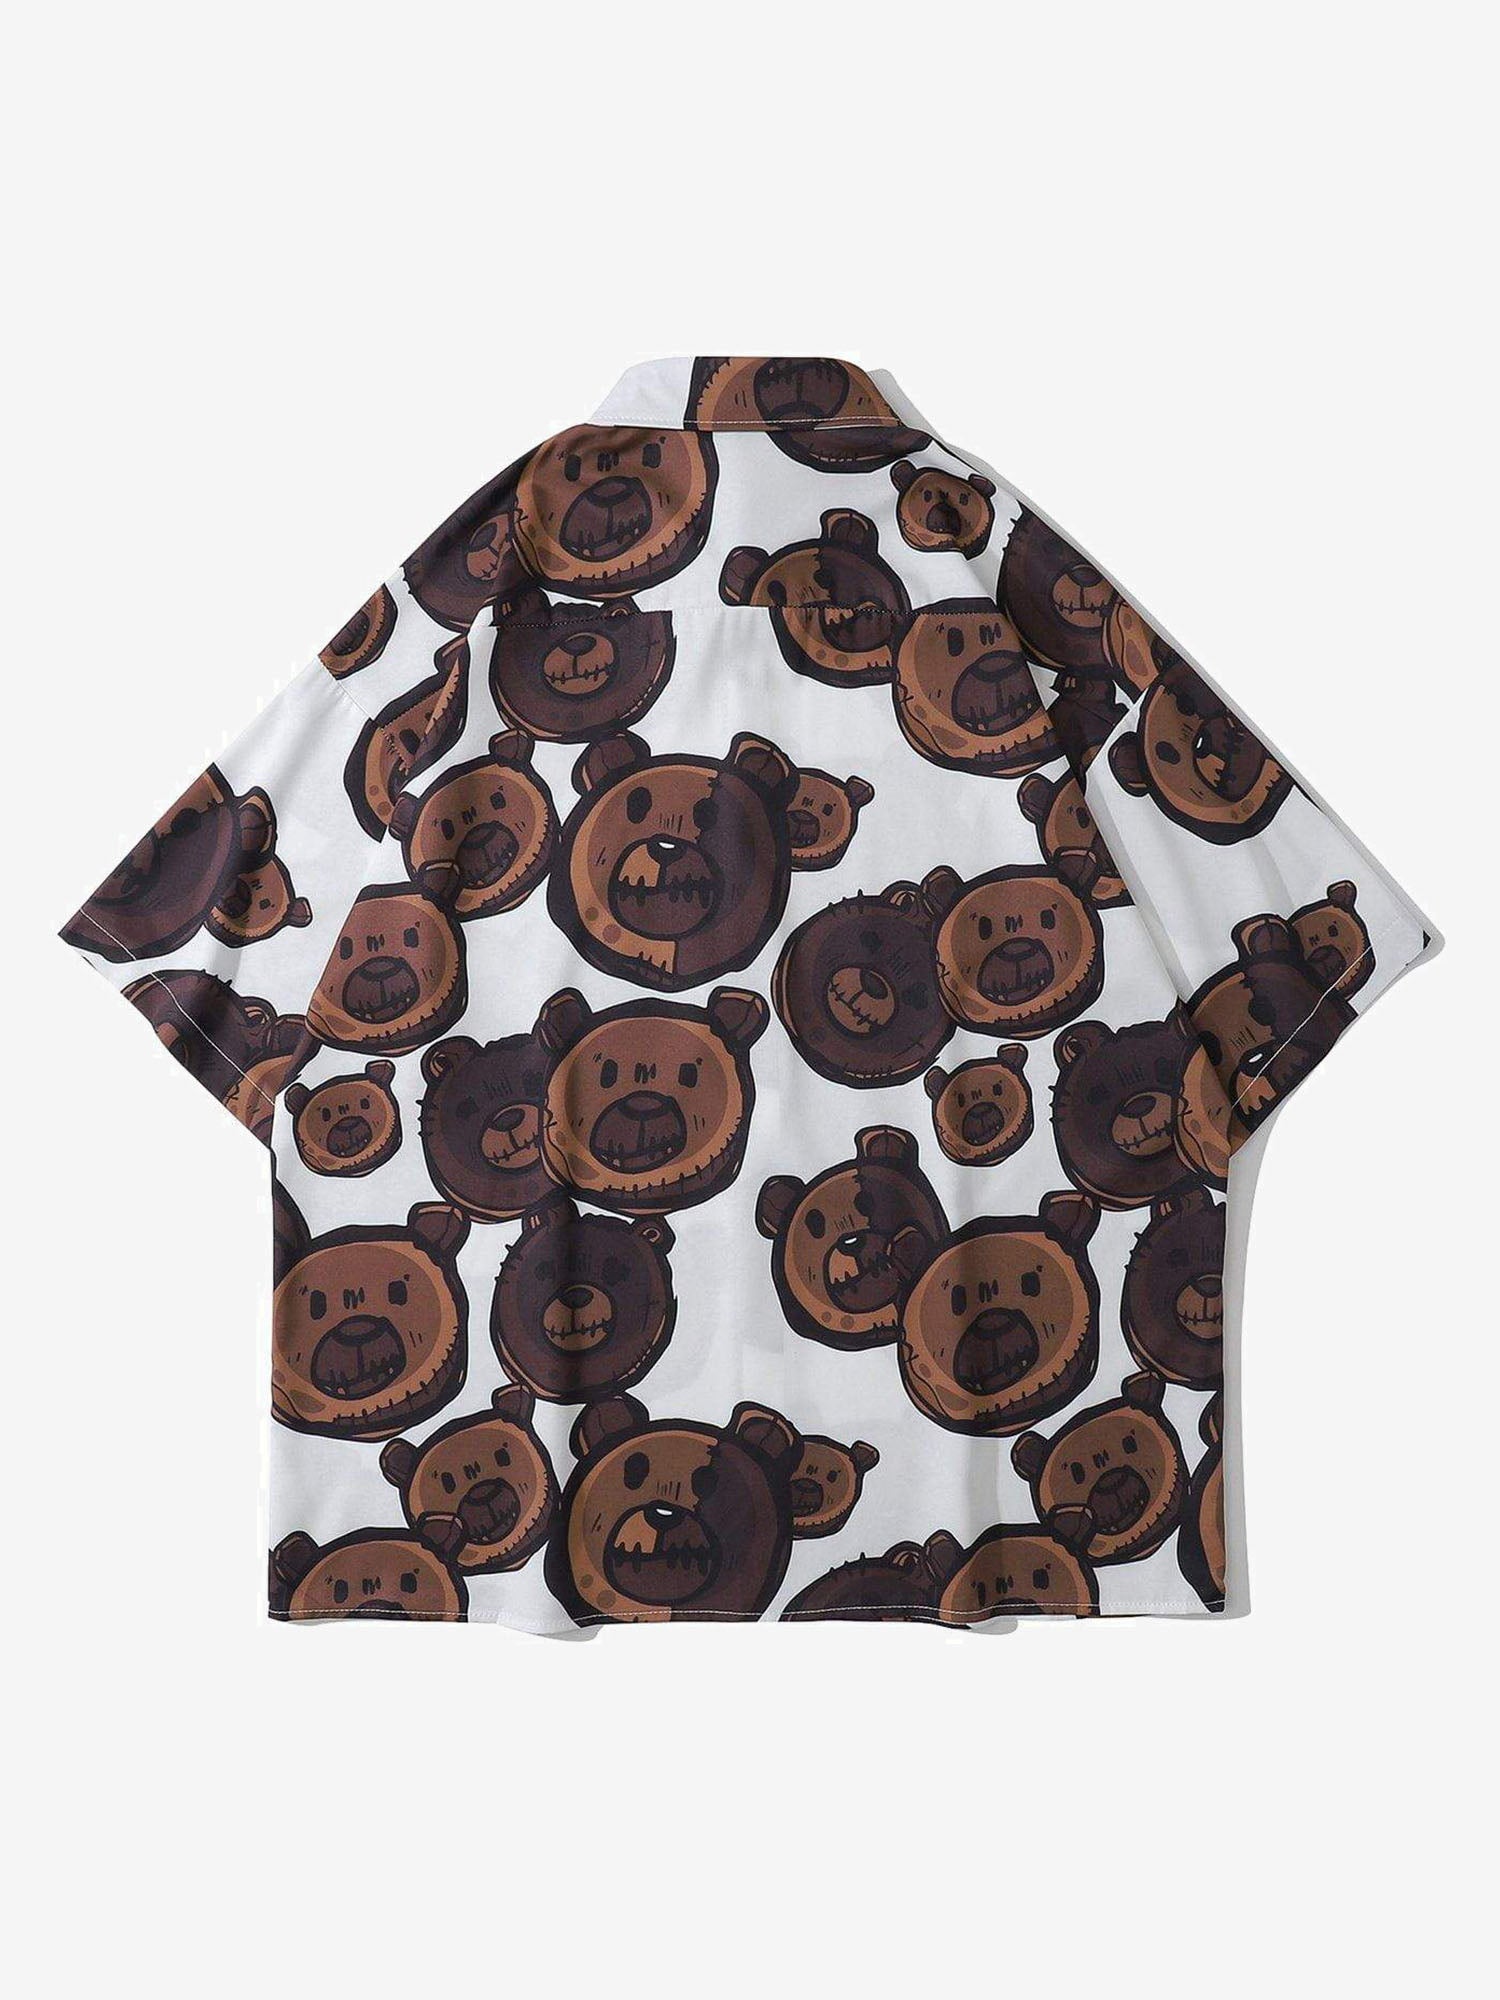 JUSTNOTAG Cartoon Bear Full Print Short Sleeved Shirt